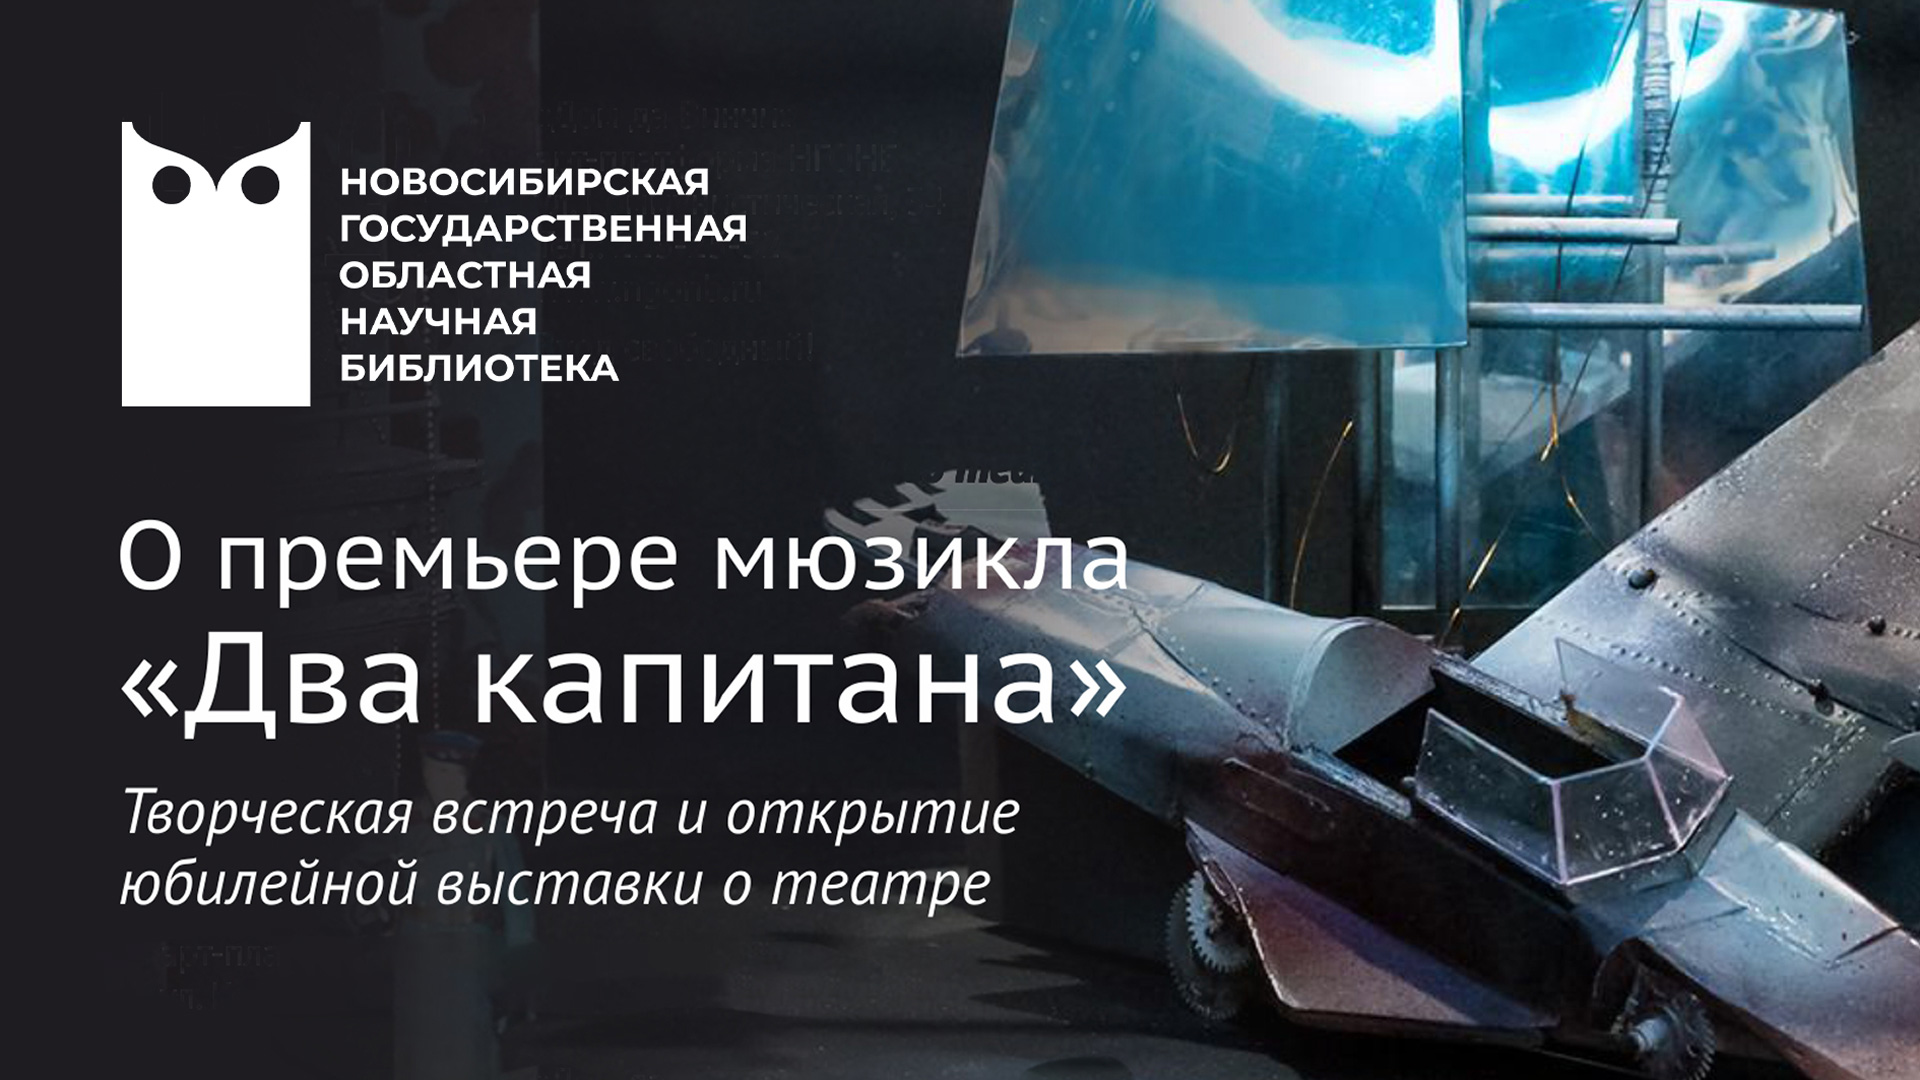 65 лет Новосибирскому музыкальному театру: творческая встреча к премьере мюзикла «Два капитана»